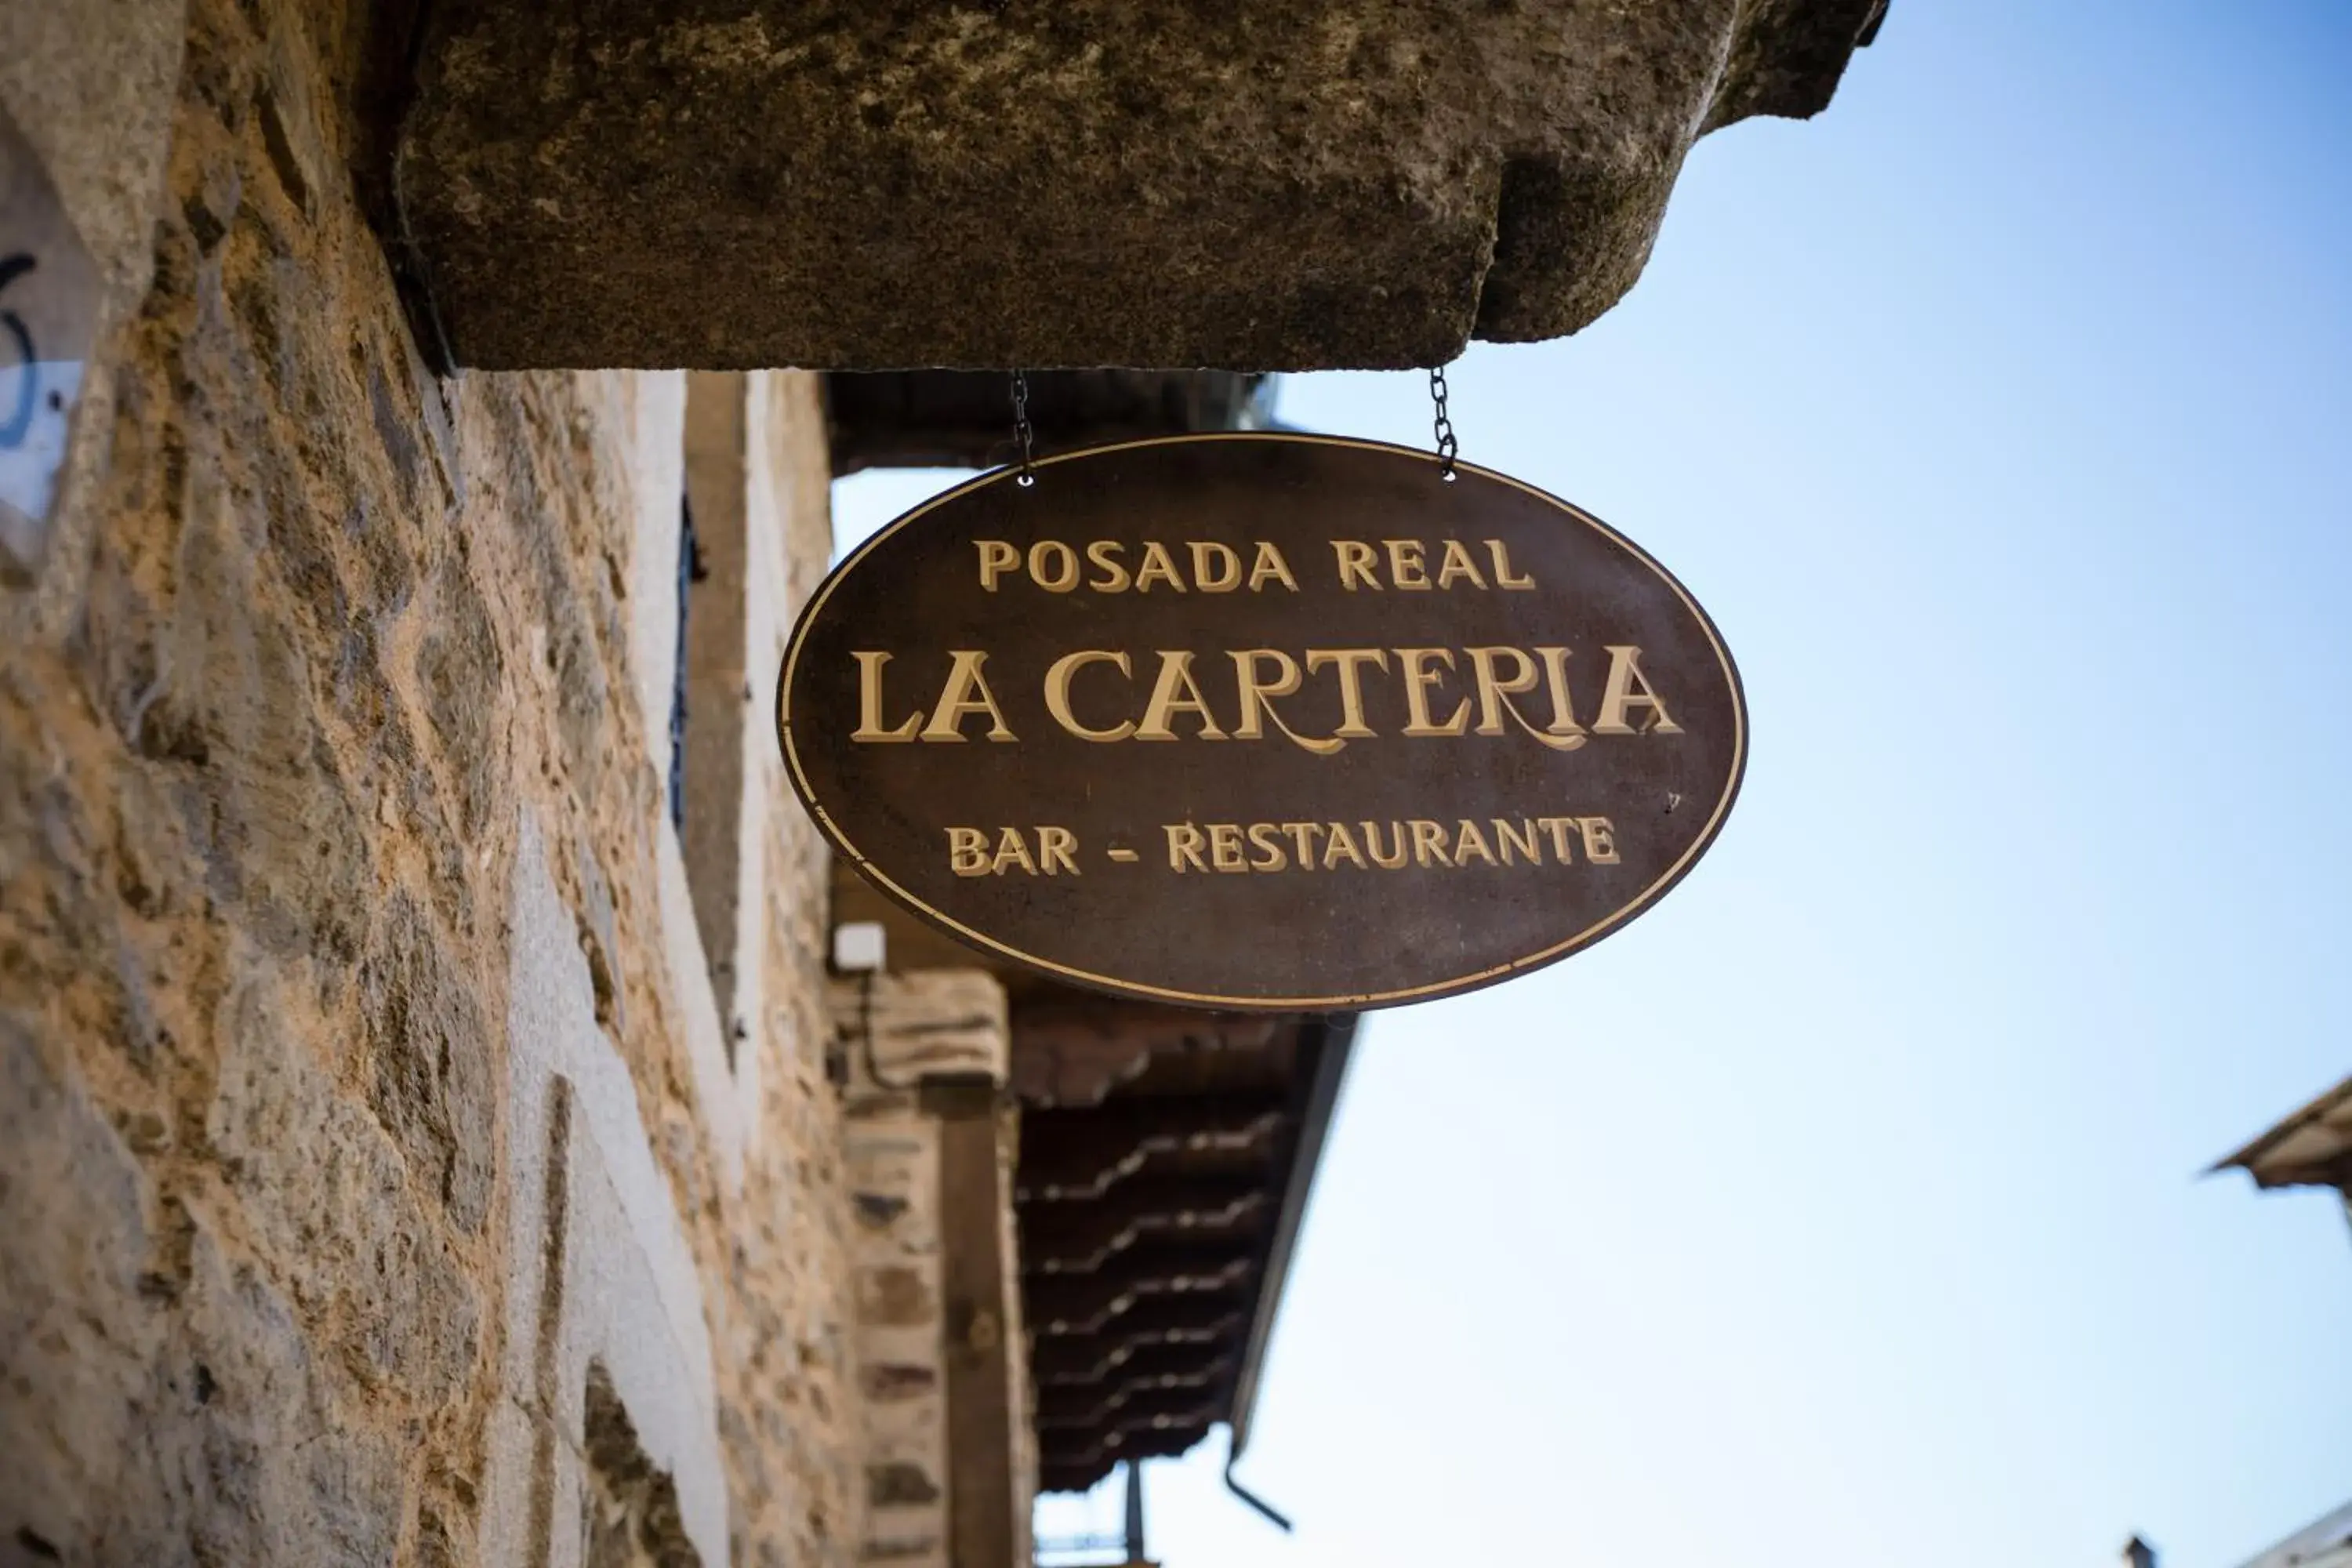 Facade/entrance in Posada Real La Carteria